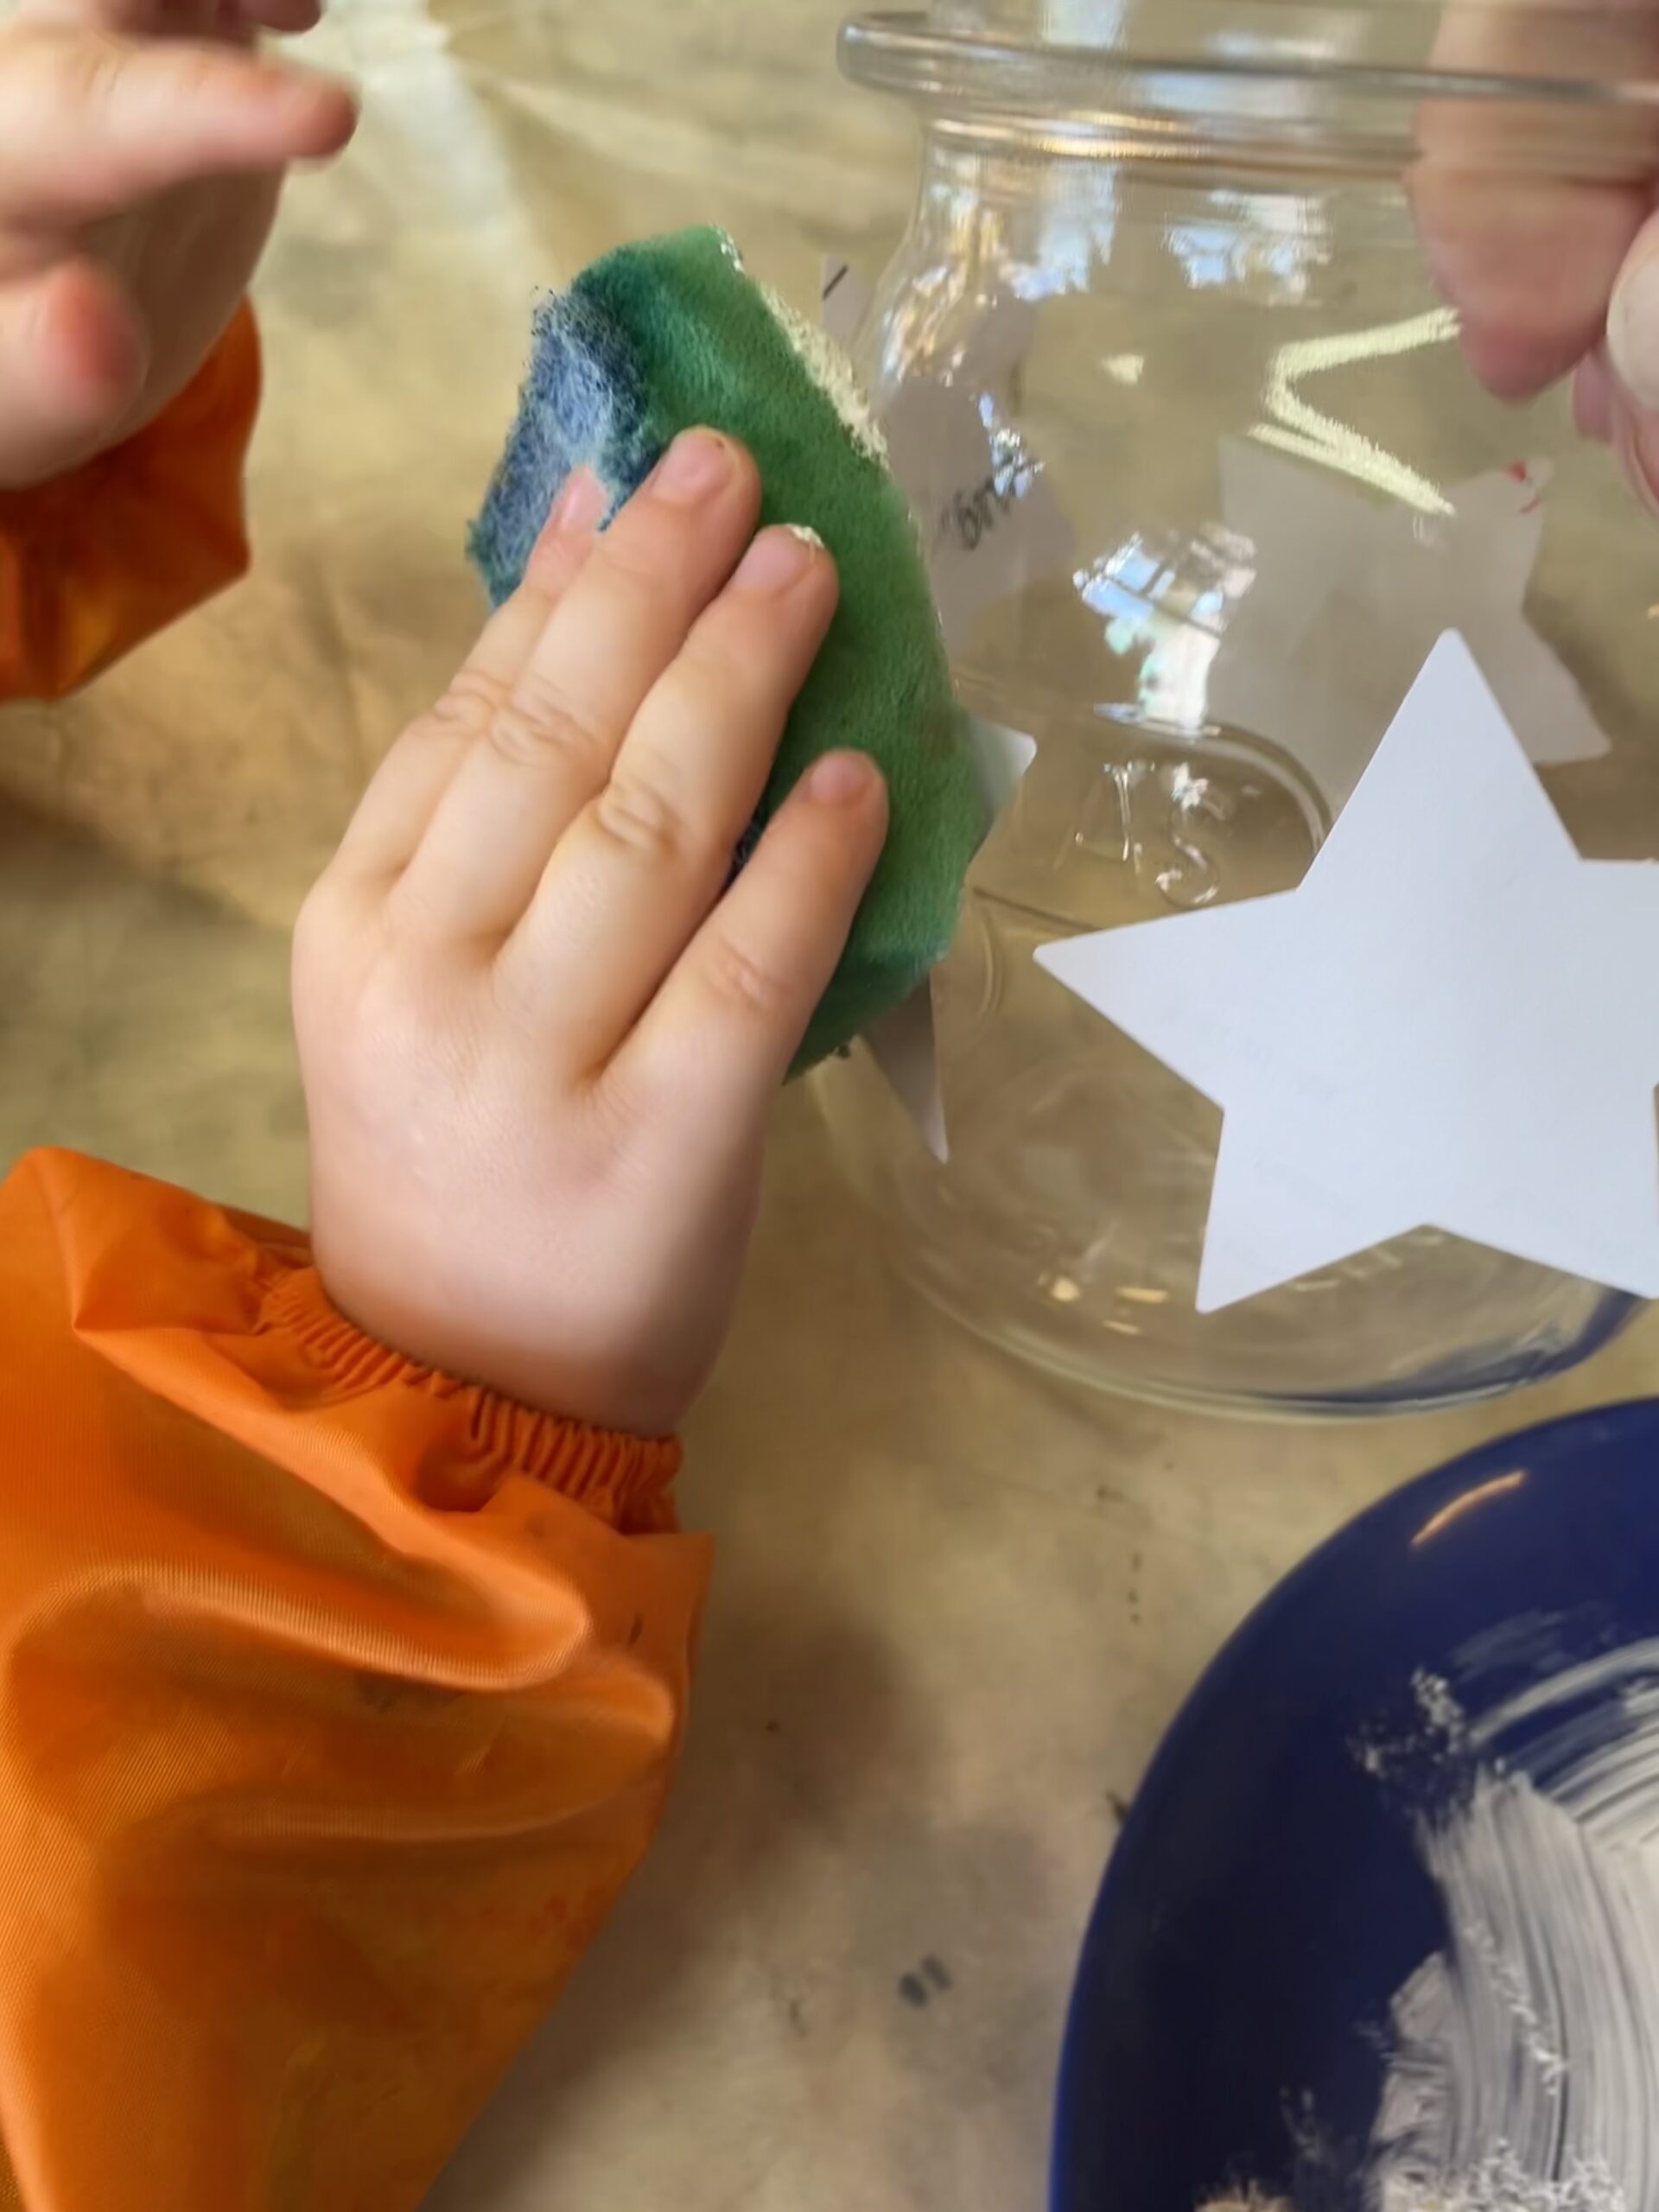 Bild zum Schritt 7 für das Bastel- und DIY-Abenteuer für Kinder: 'Gebt kleineren Kindern Hilfestellung beim Halten des Glases.'